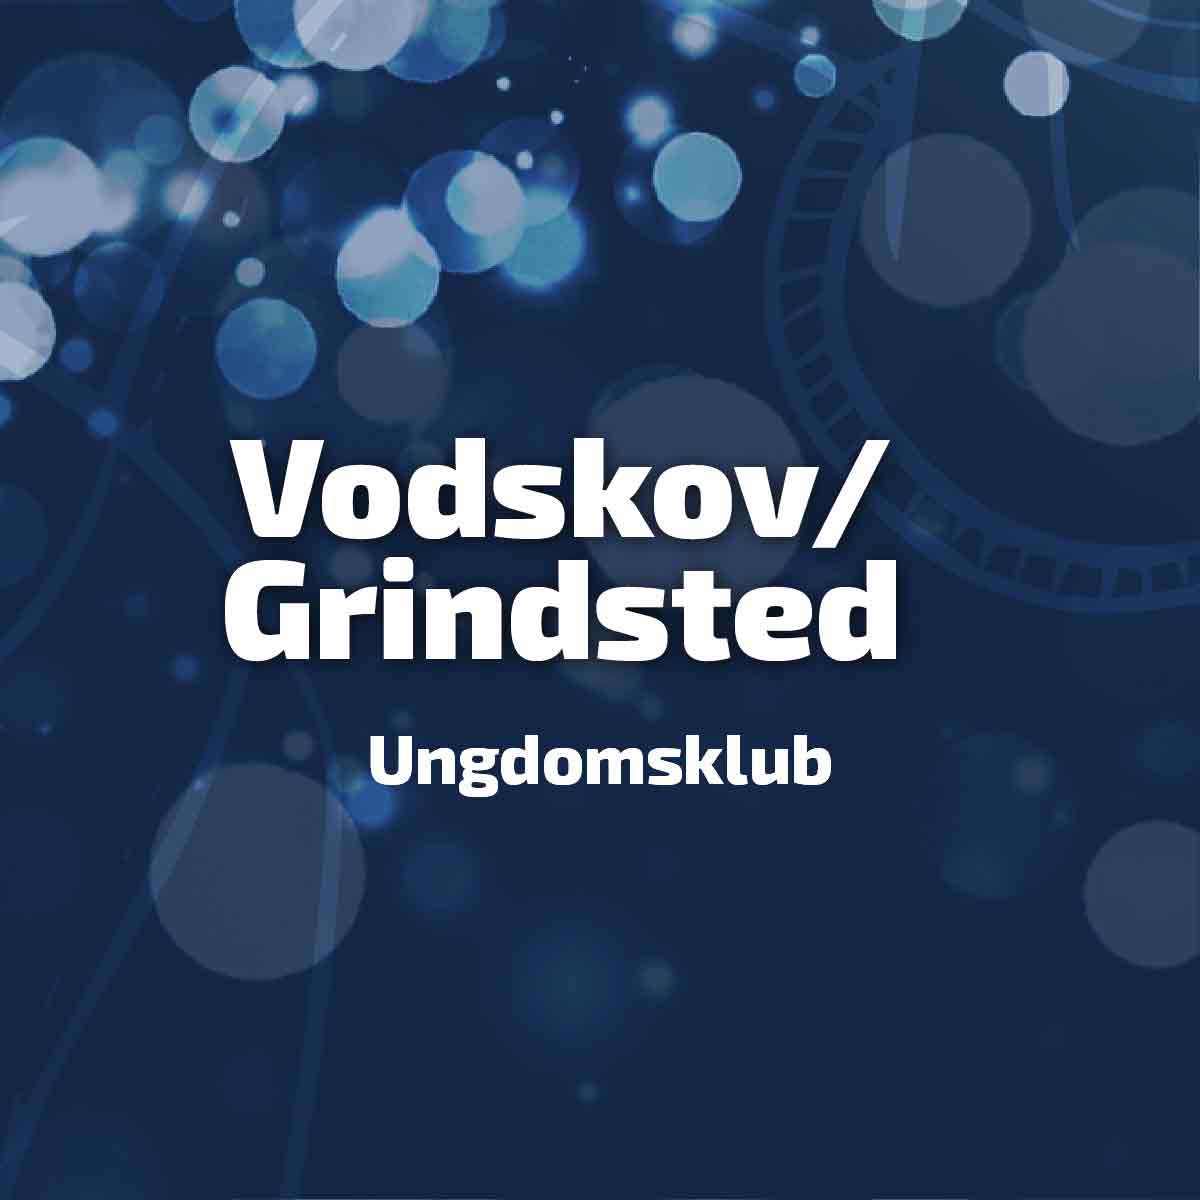 Vodskov/Grindsted Ungdomsklub